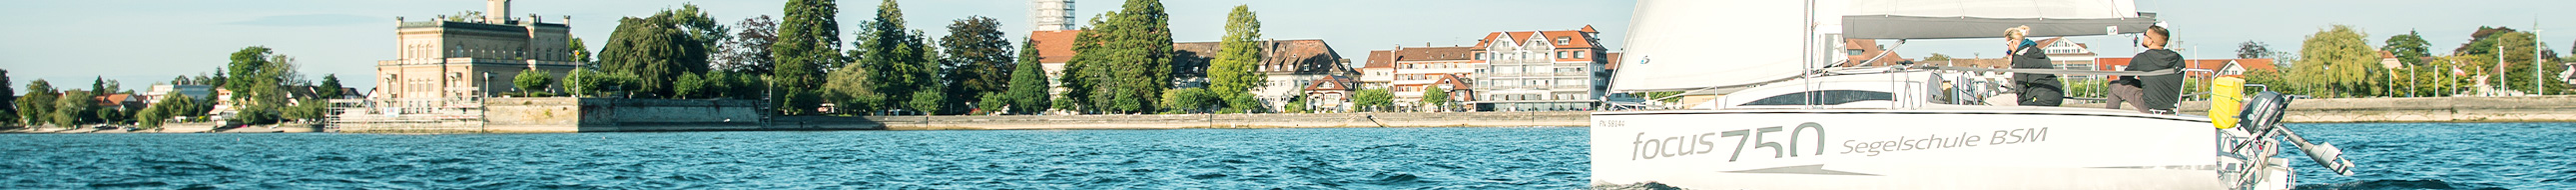 Segelschule BSM Segelboot Bootsfahrt auf Bodensee